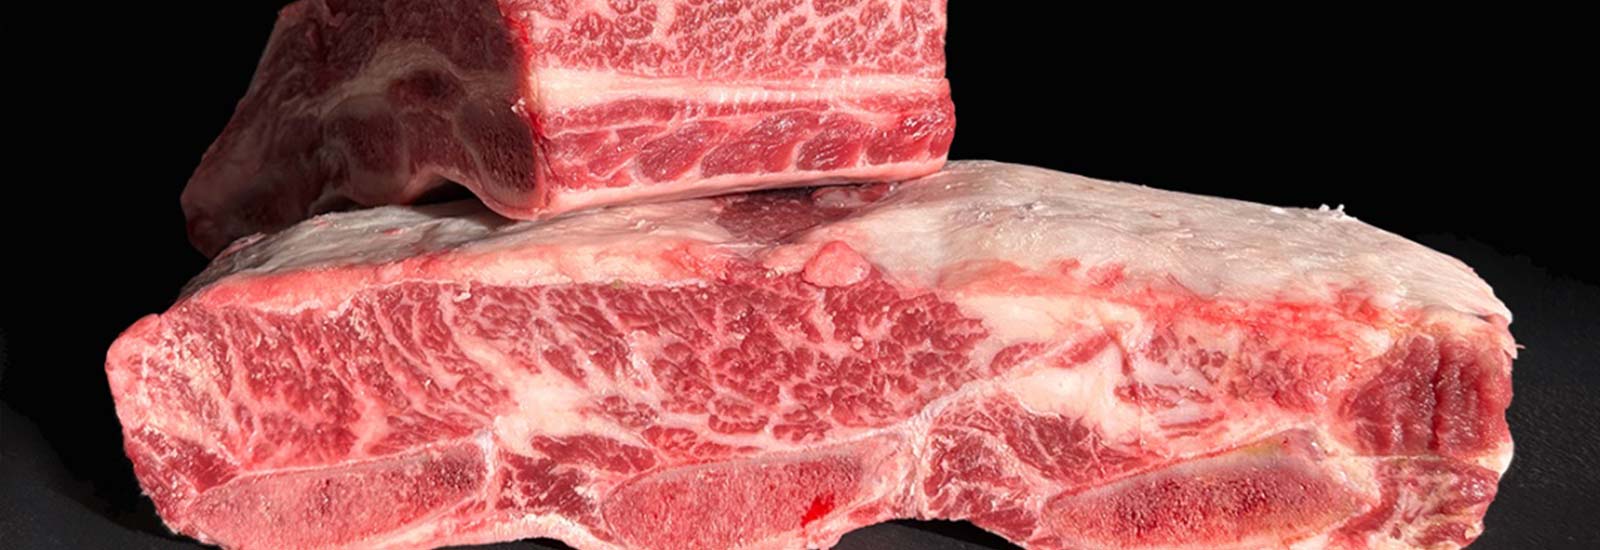 Cómo saber si la carne está mala o estropeada